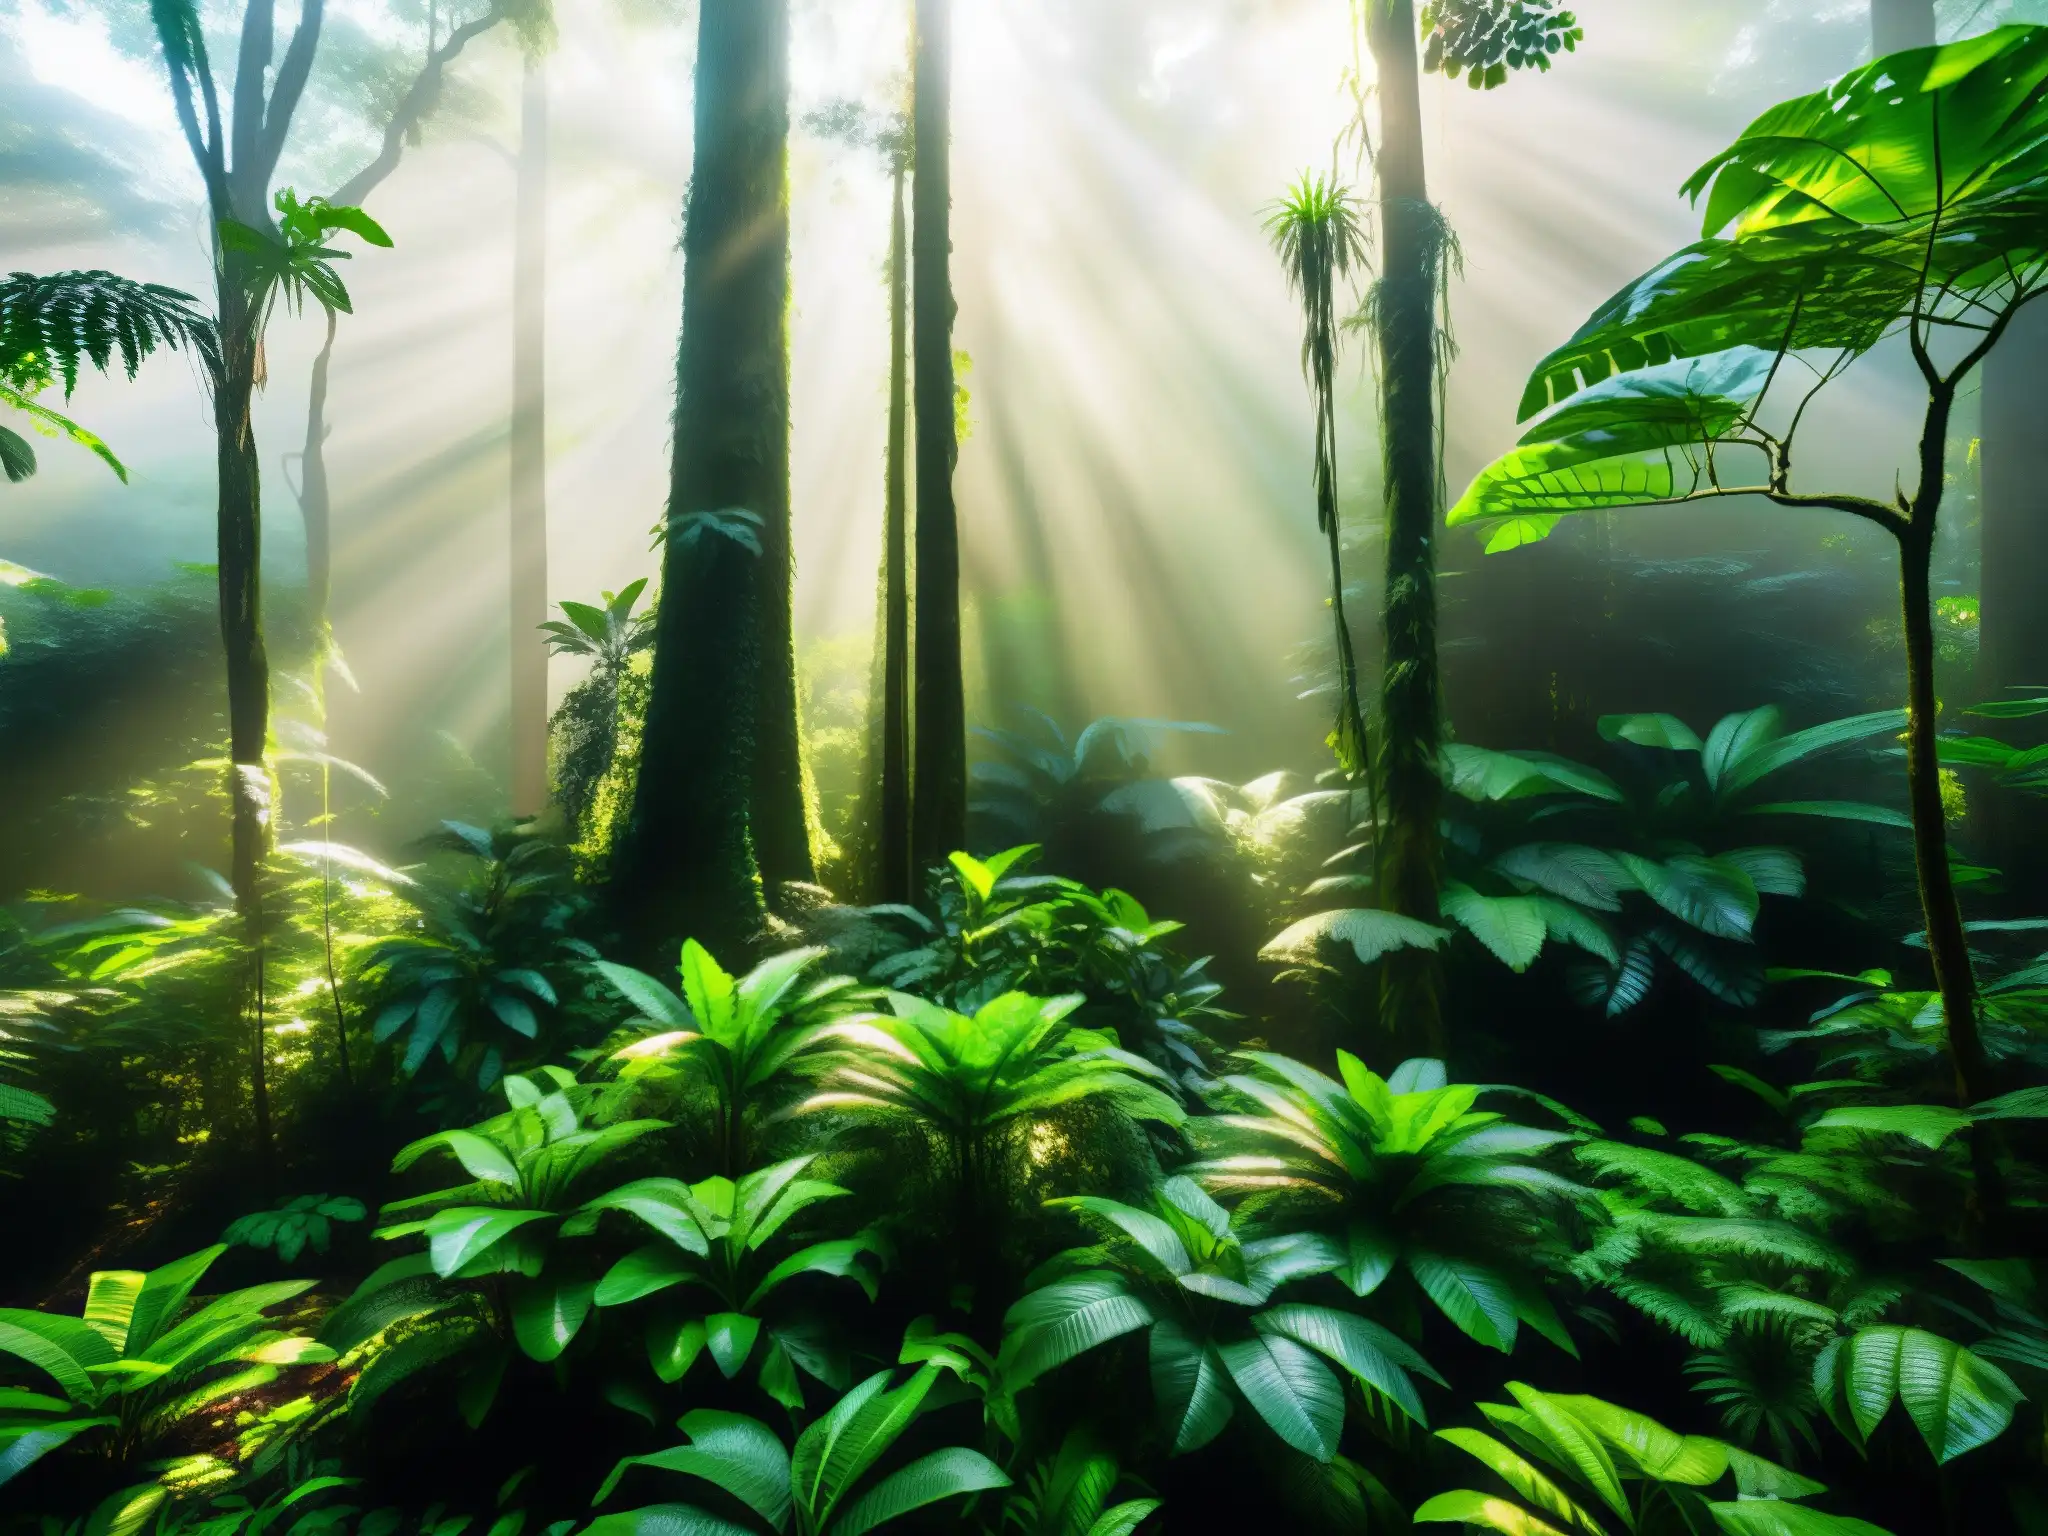 Imagen detallada de la exuberante selva amazónica, con su rica biodiversidad y atmósfera misteriosa, evocando la mitología del tunche en Amazonía